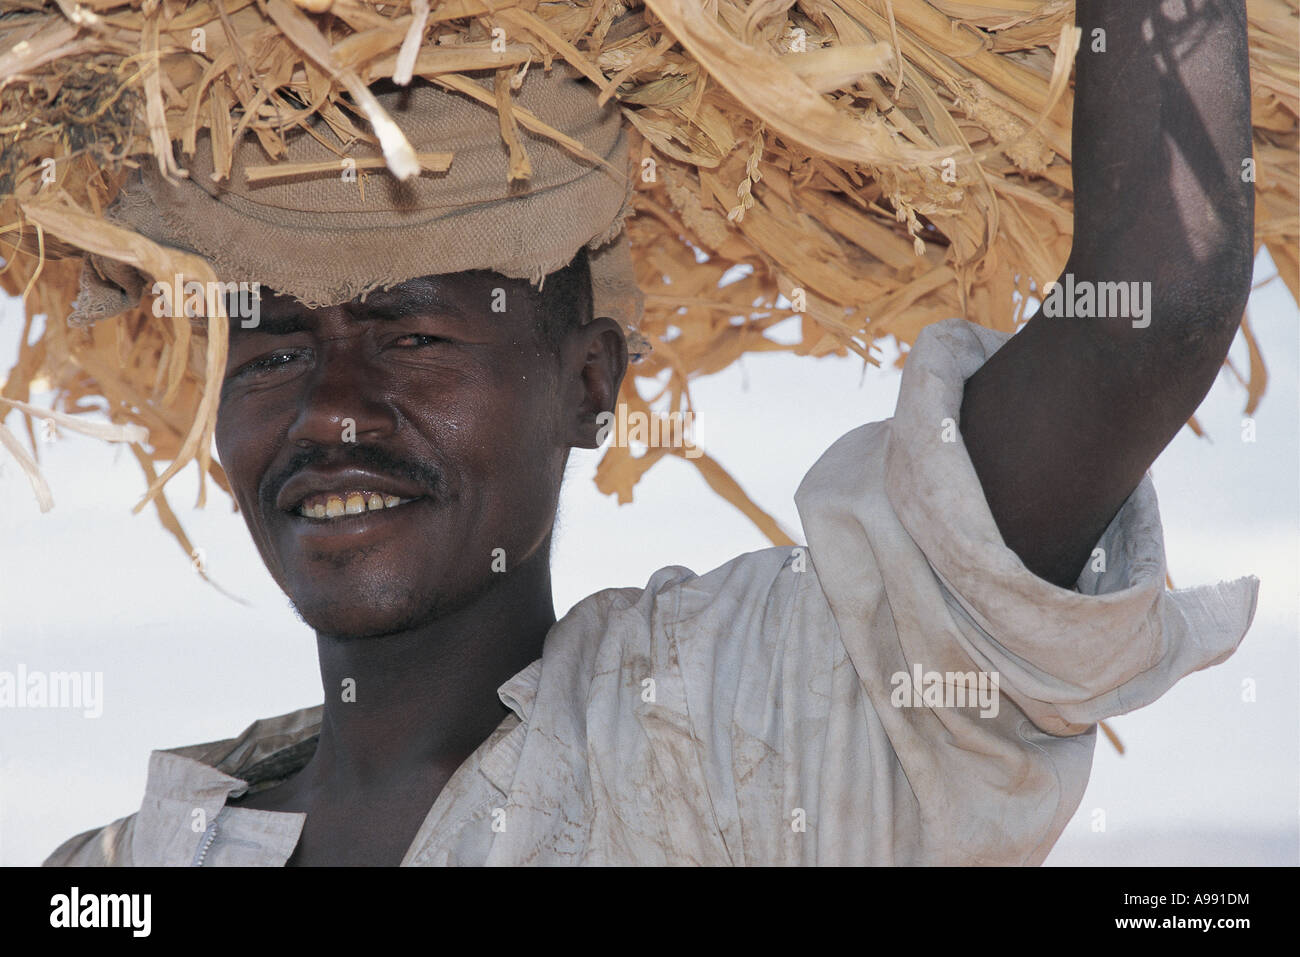 Agriculteur en transportant de lourdes charges de la tête des tiges de maïs Konso Ethiopie Banque D'Images